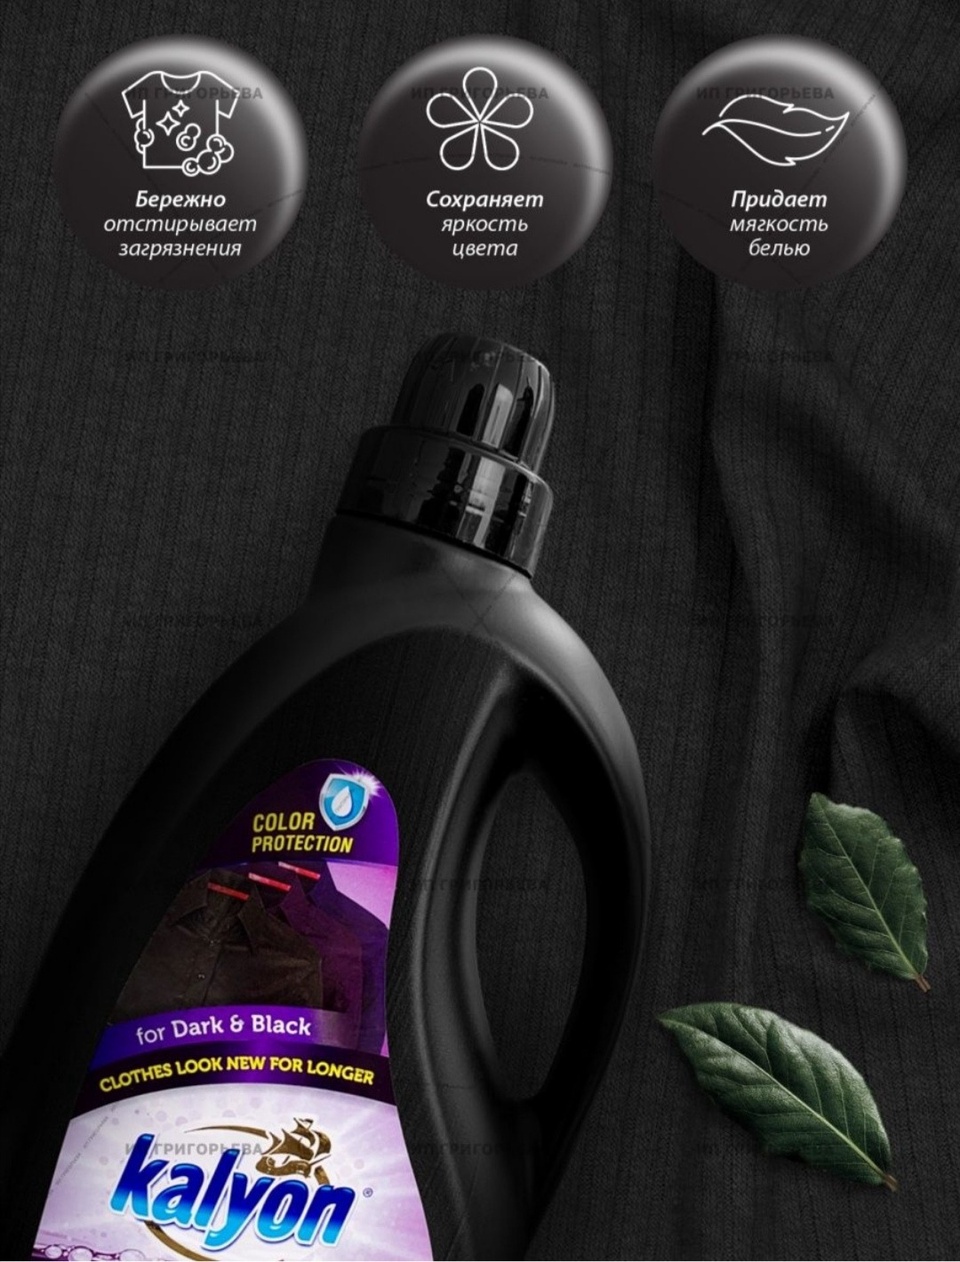 Kalyon жидкий порошок для чёрных и тёмных тканей - 760 ₽, заказать онлайн.